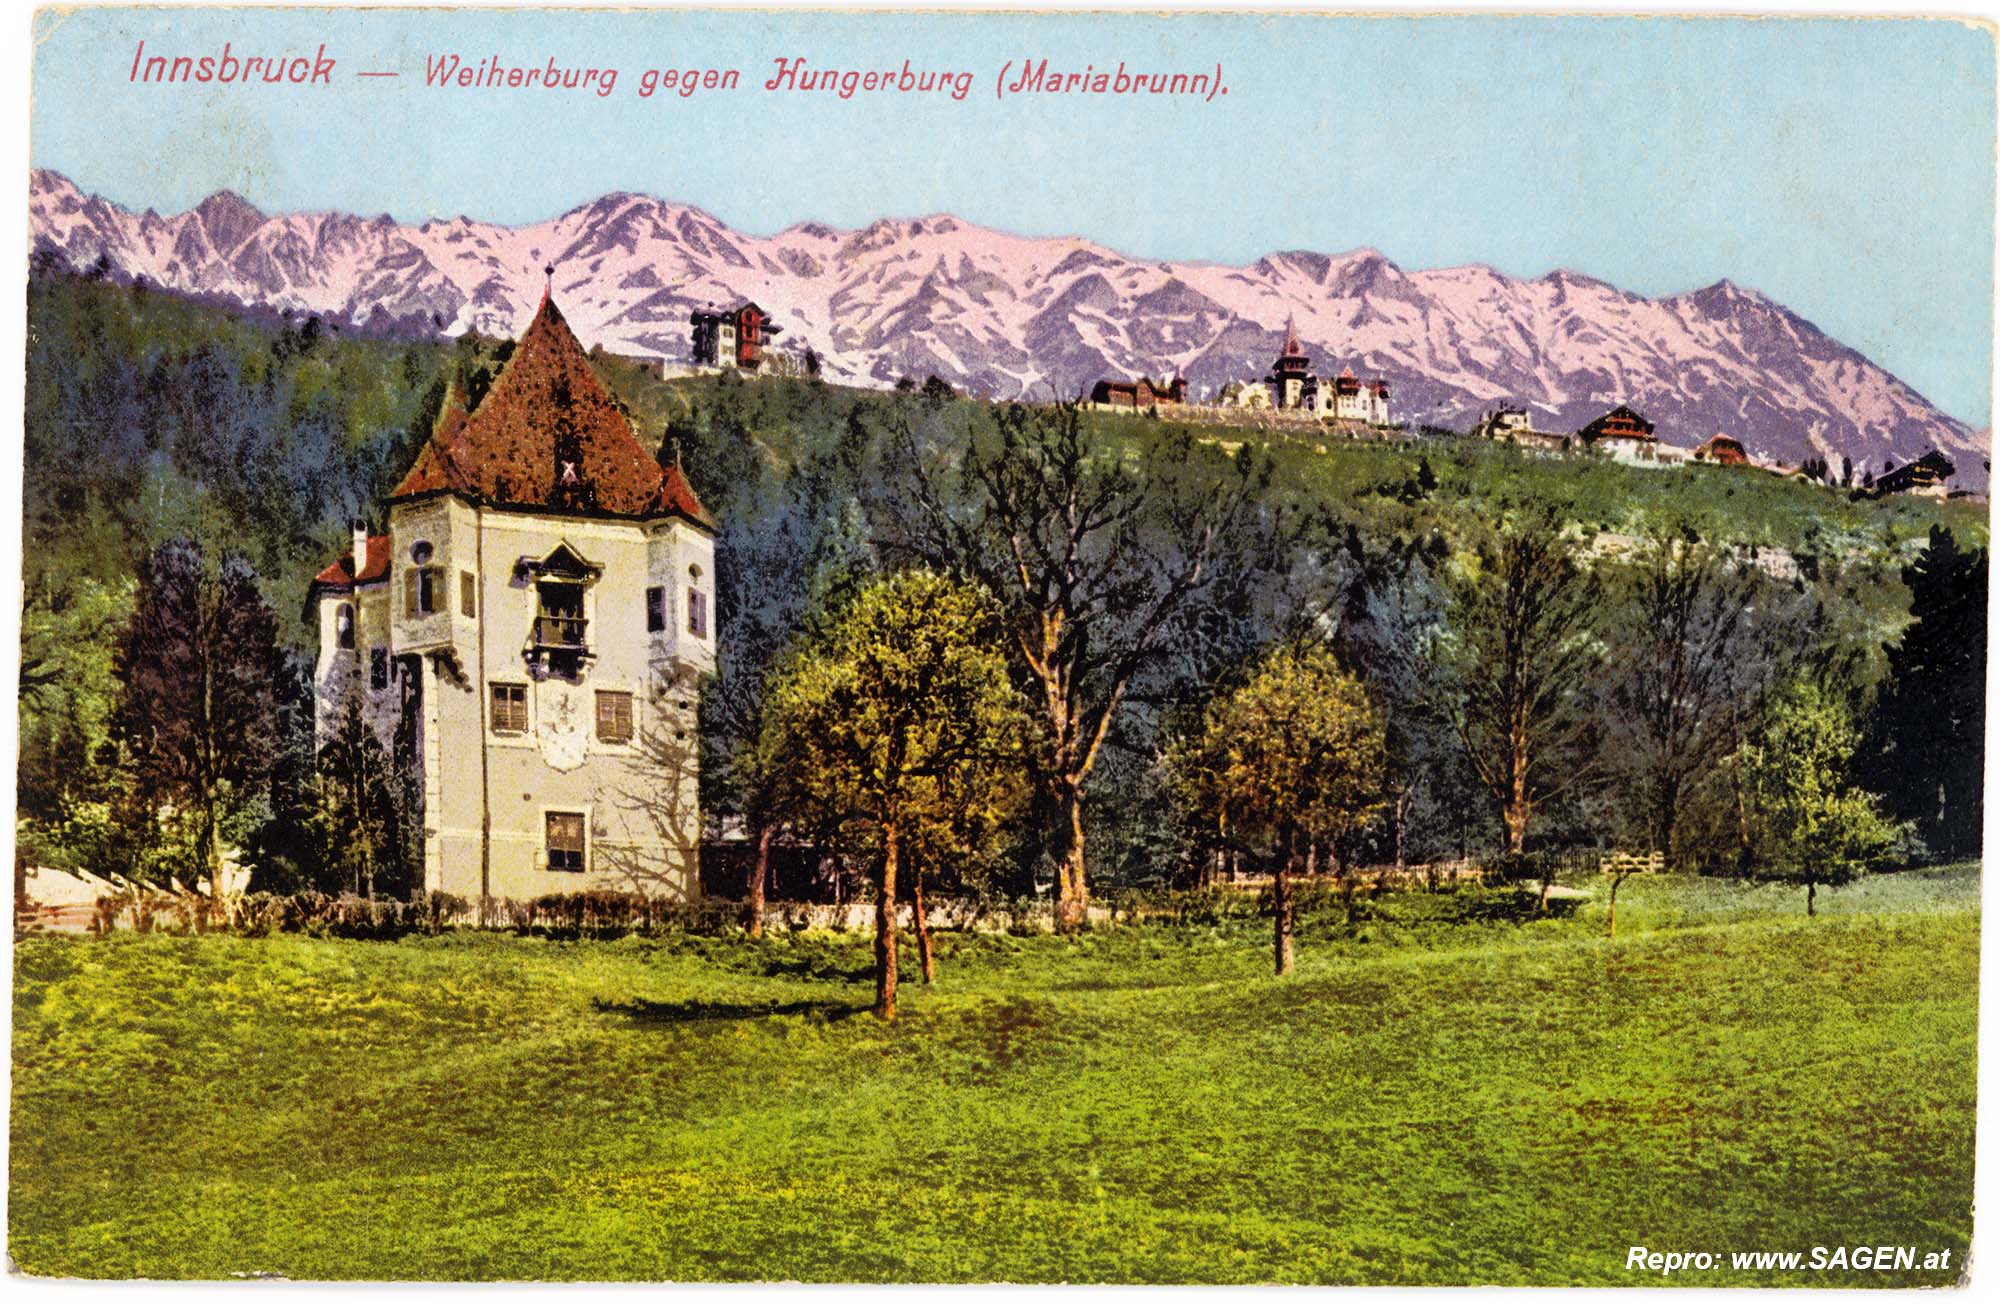 Innsbruck - Weiherburg gegen Hungerburg (Mariabrunn)